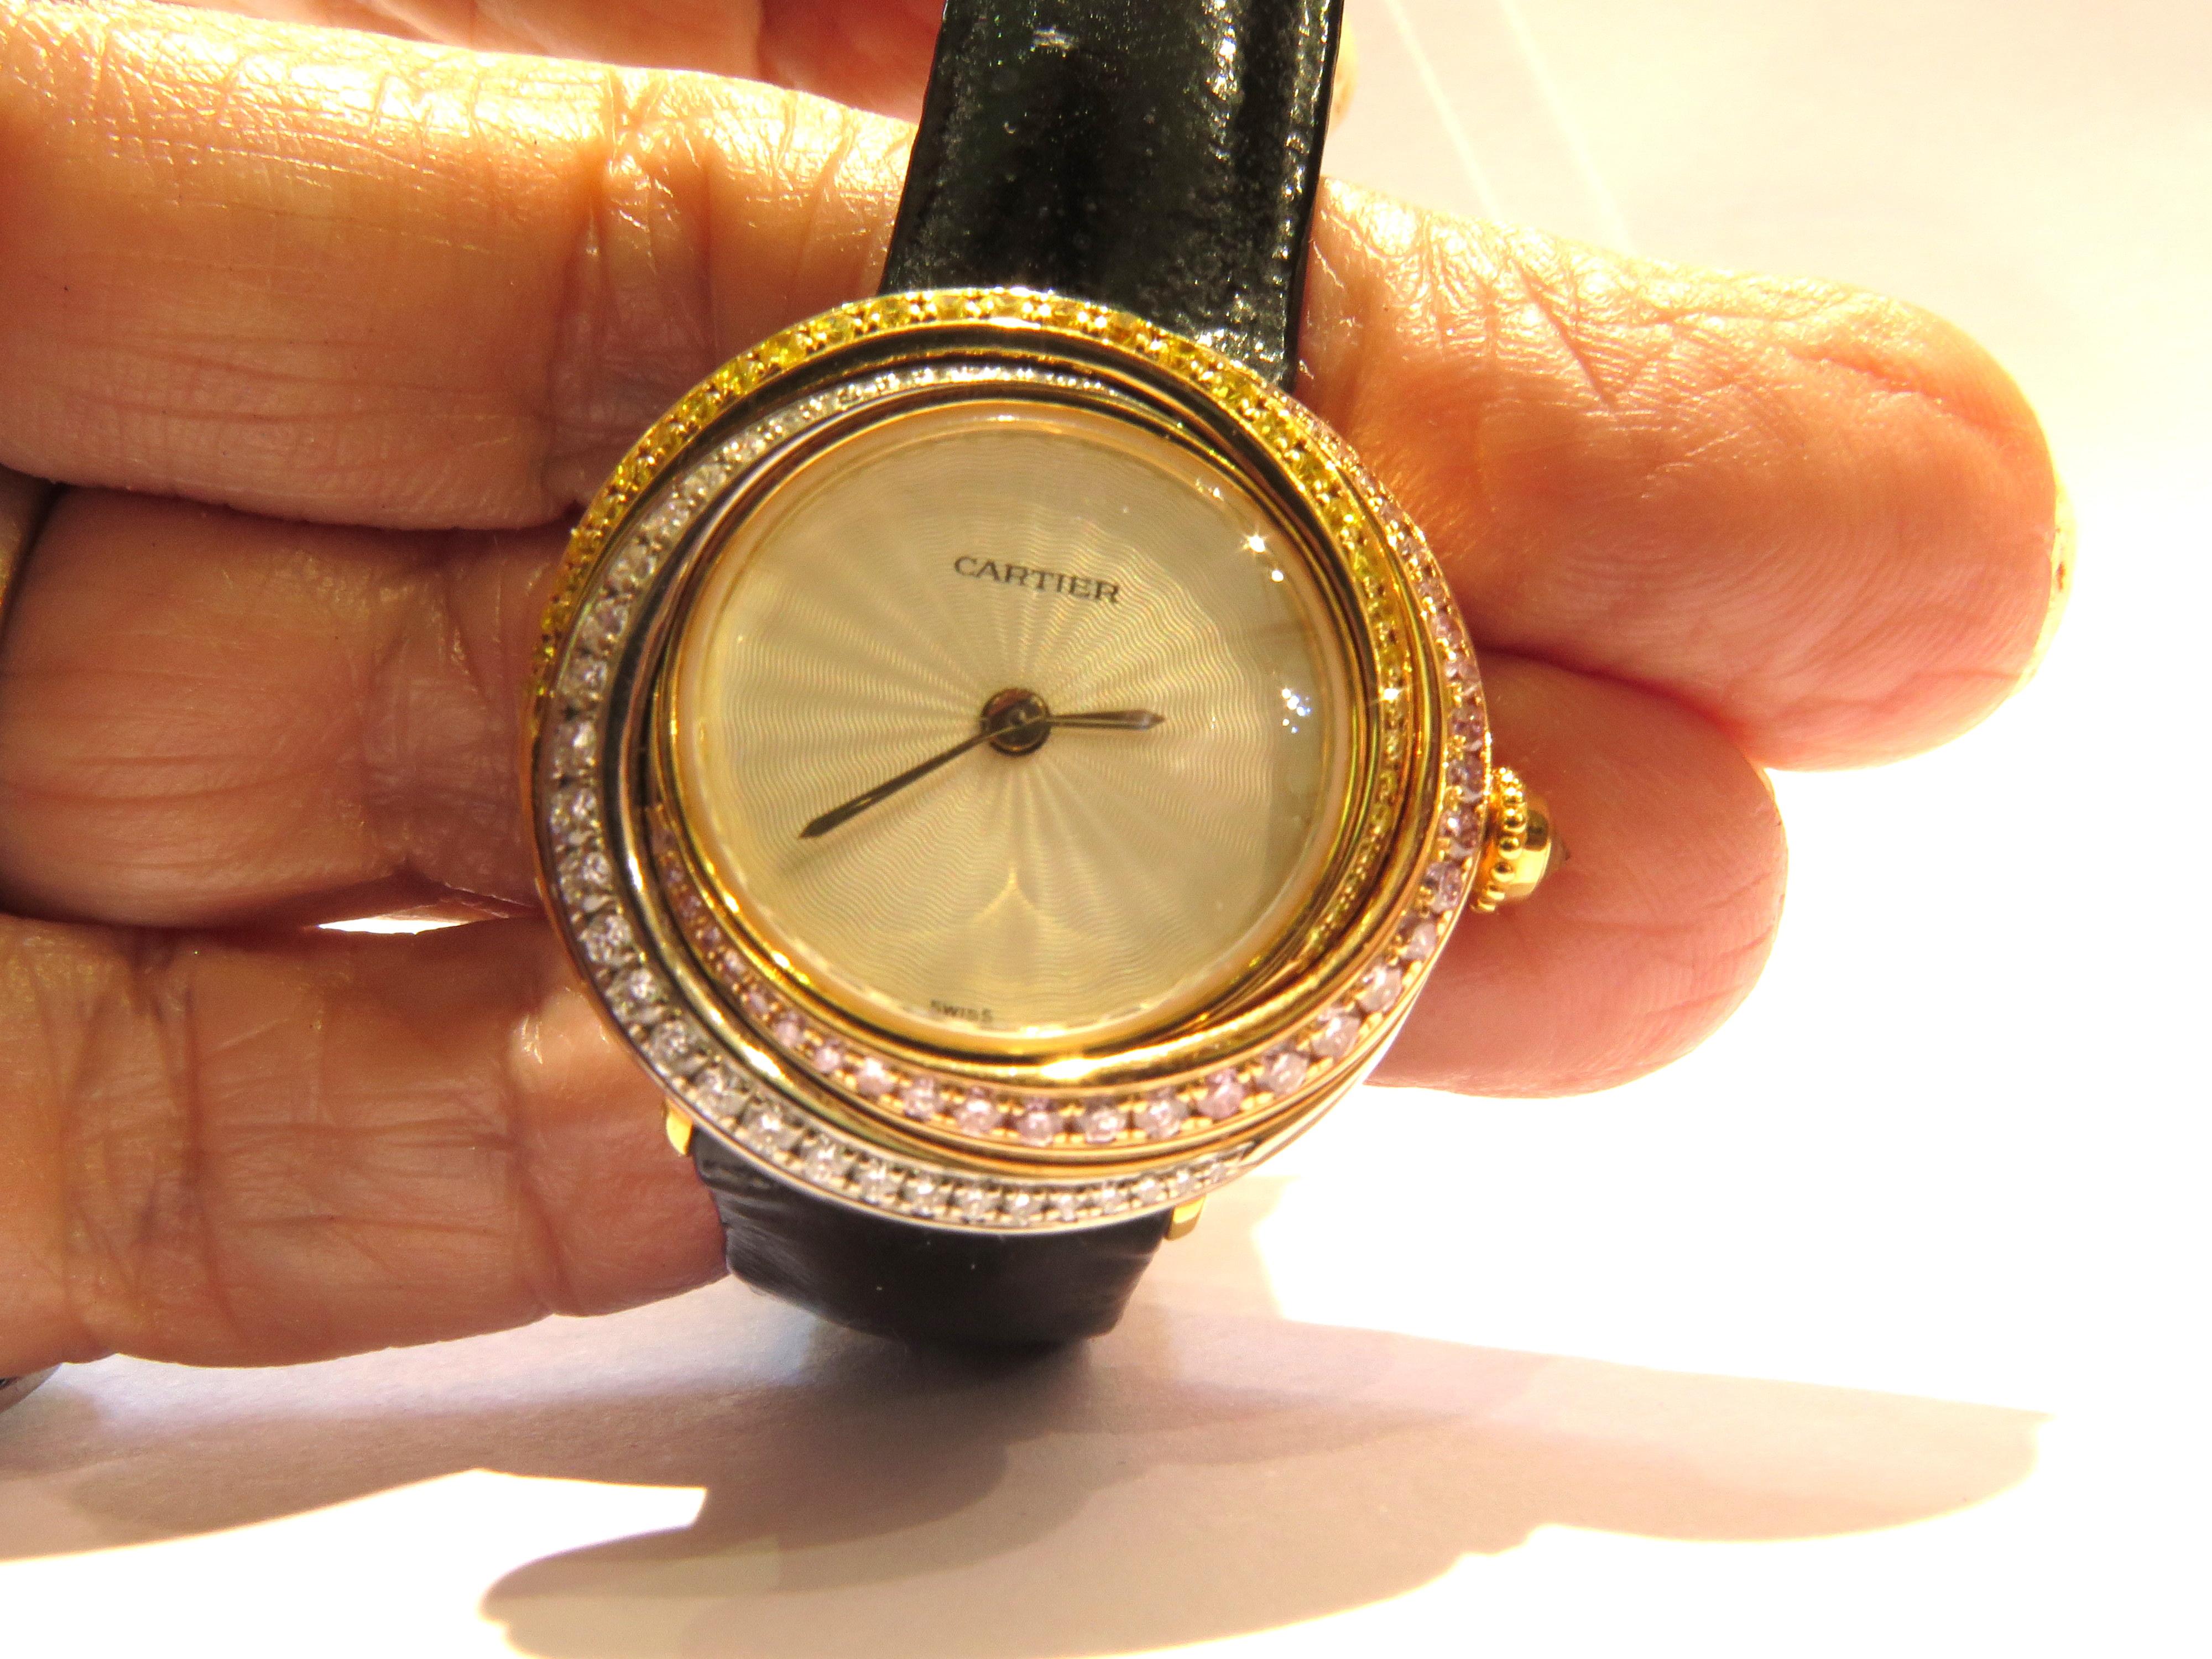 cartier trinity watch with diamonds